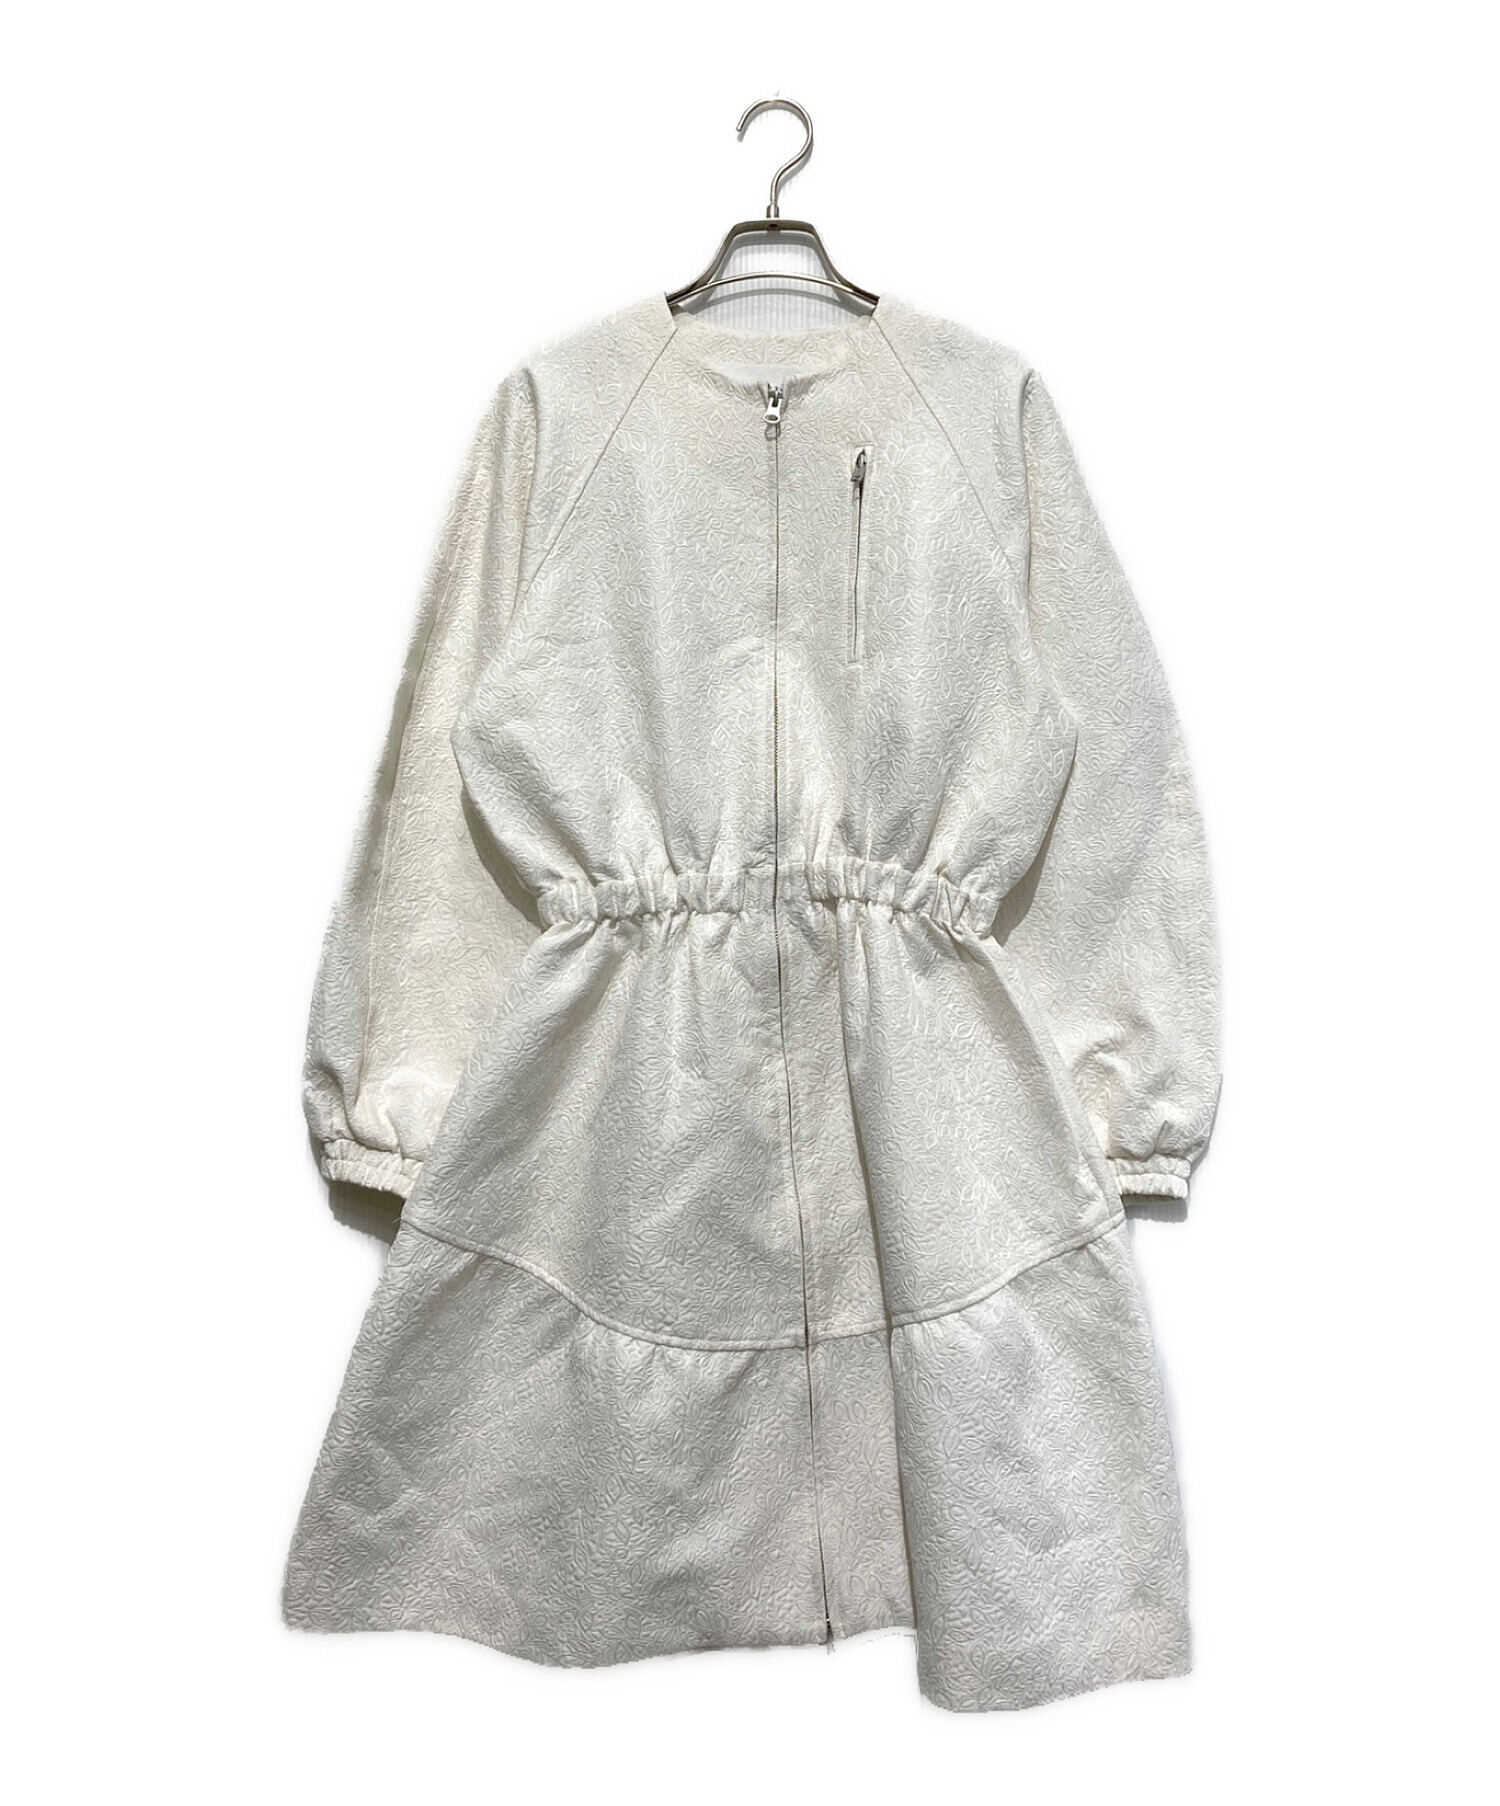 LE CIEL BLEU (ルシェルブルー) Jacquard Bomber Dress ホワイト サイズ:SIZE 36